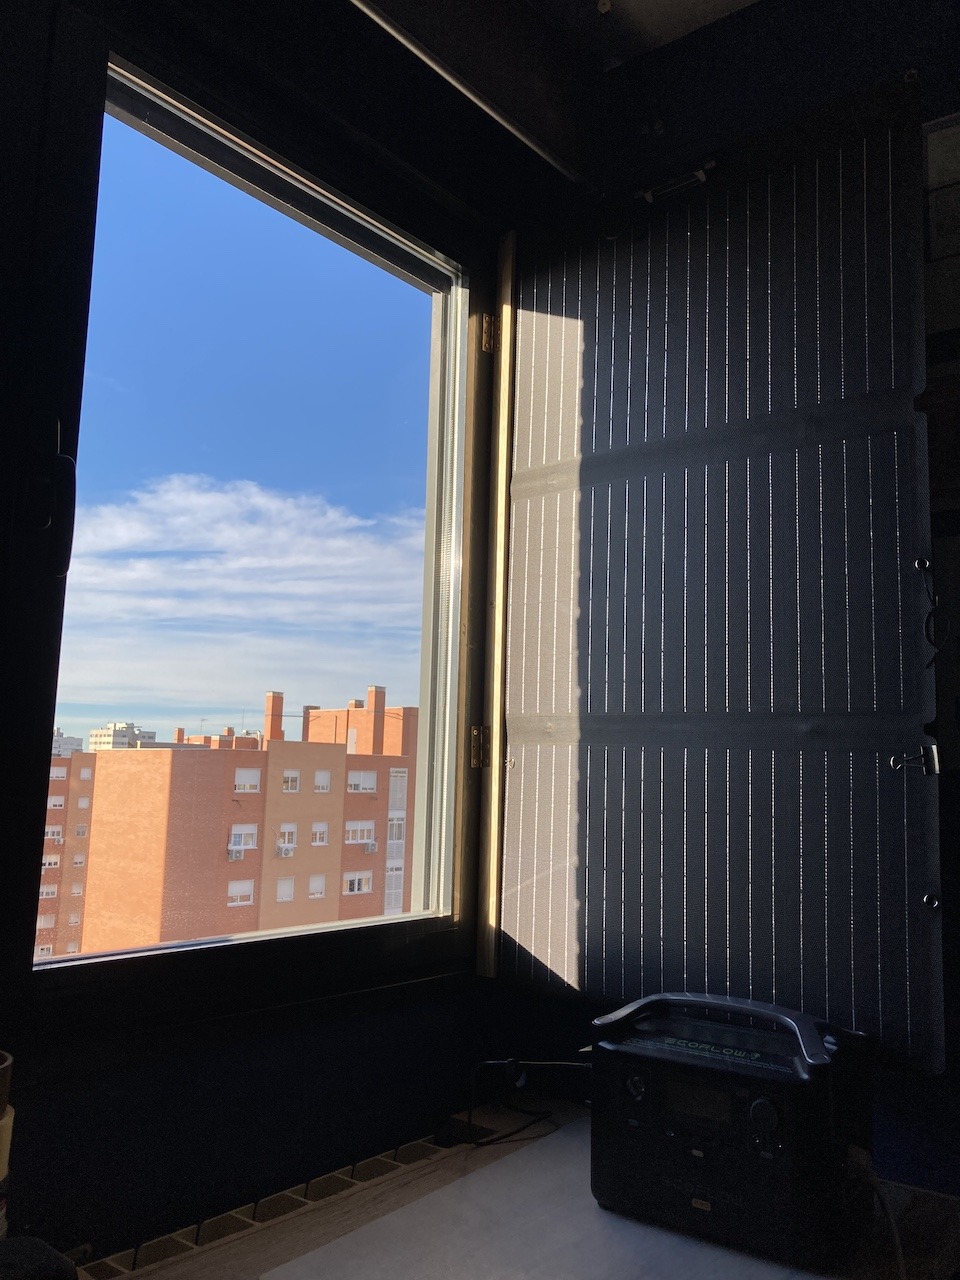 Panel solar montado en ventana de piso